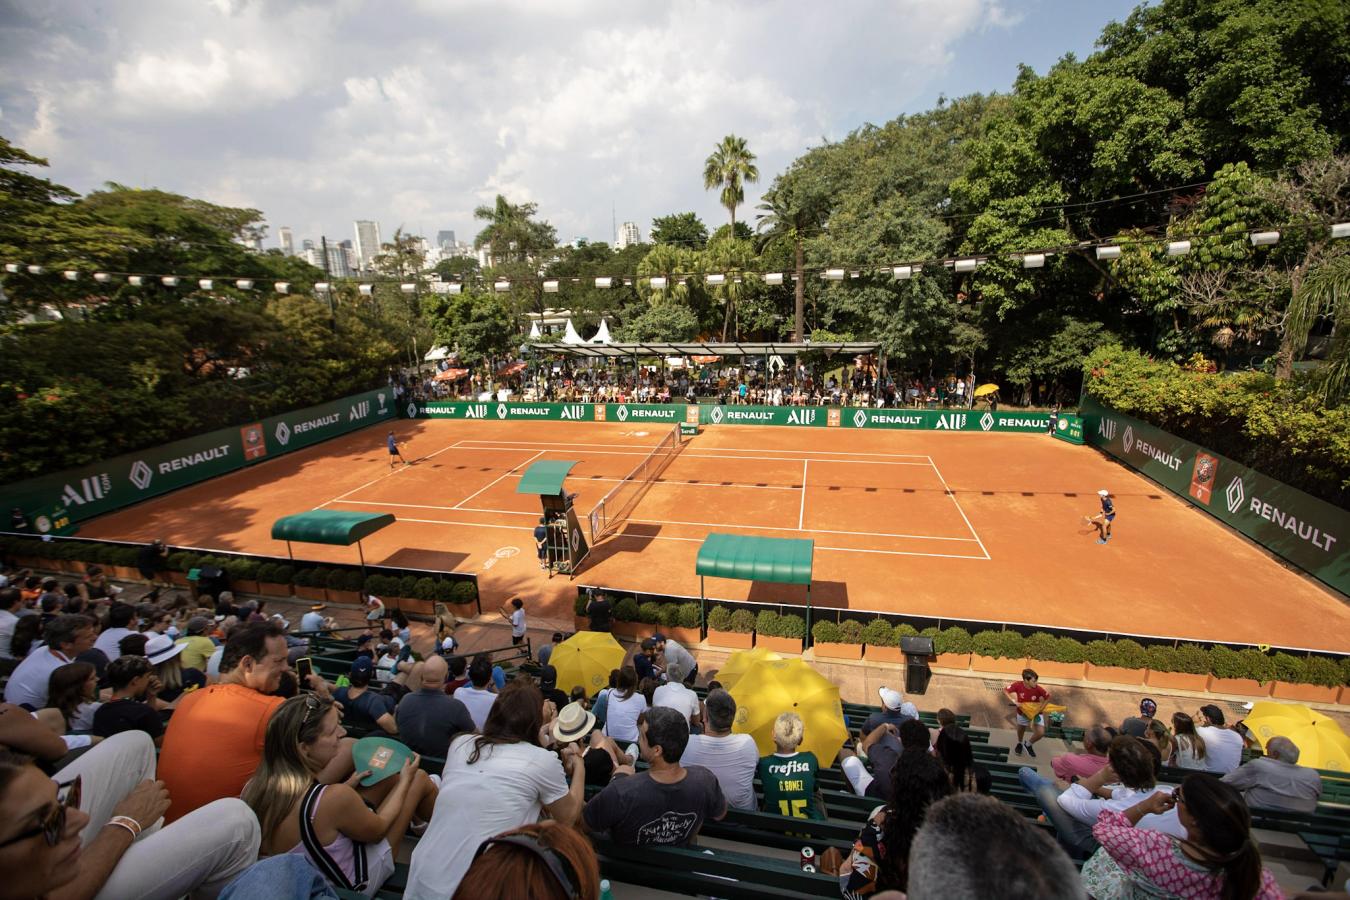 Imagen El Sociedade Harmonia de Tênis, donde se juega Roland Garros Junior Series.